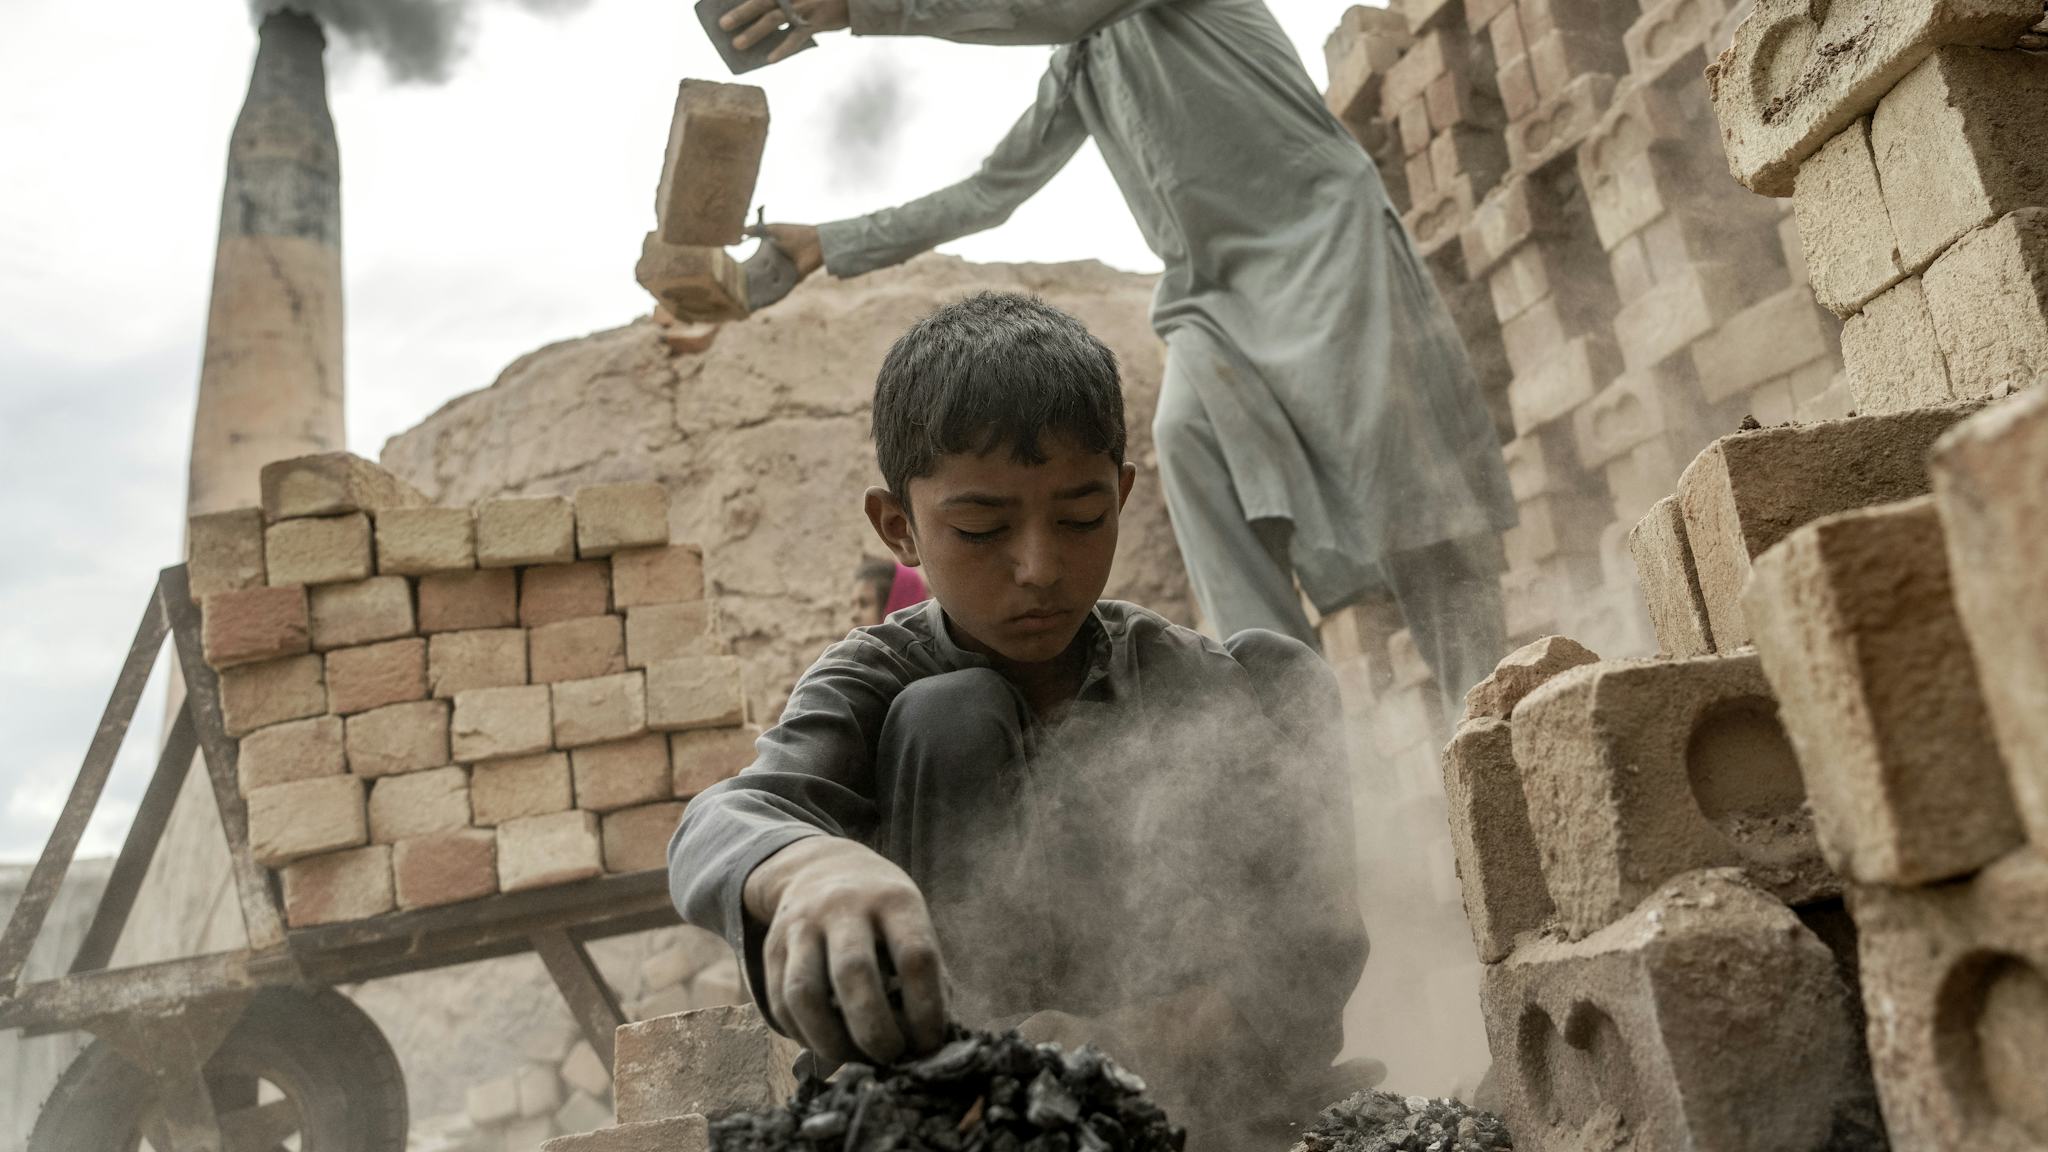 En barnarbetare jobbar i tegelfabriken i Afghanistan, i bakgrunden syns en vuxen arbetare.